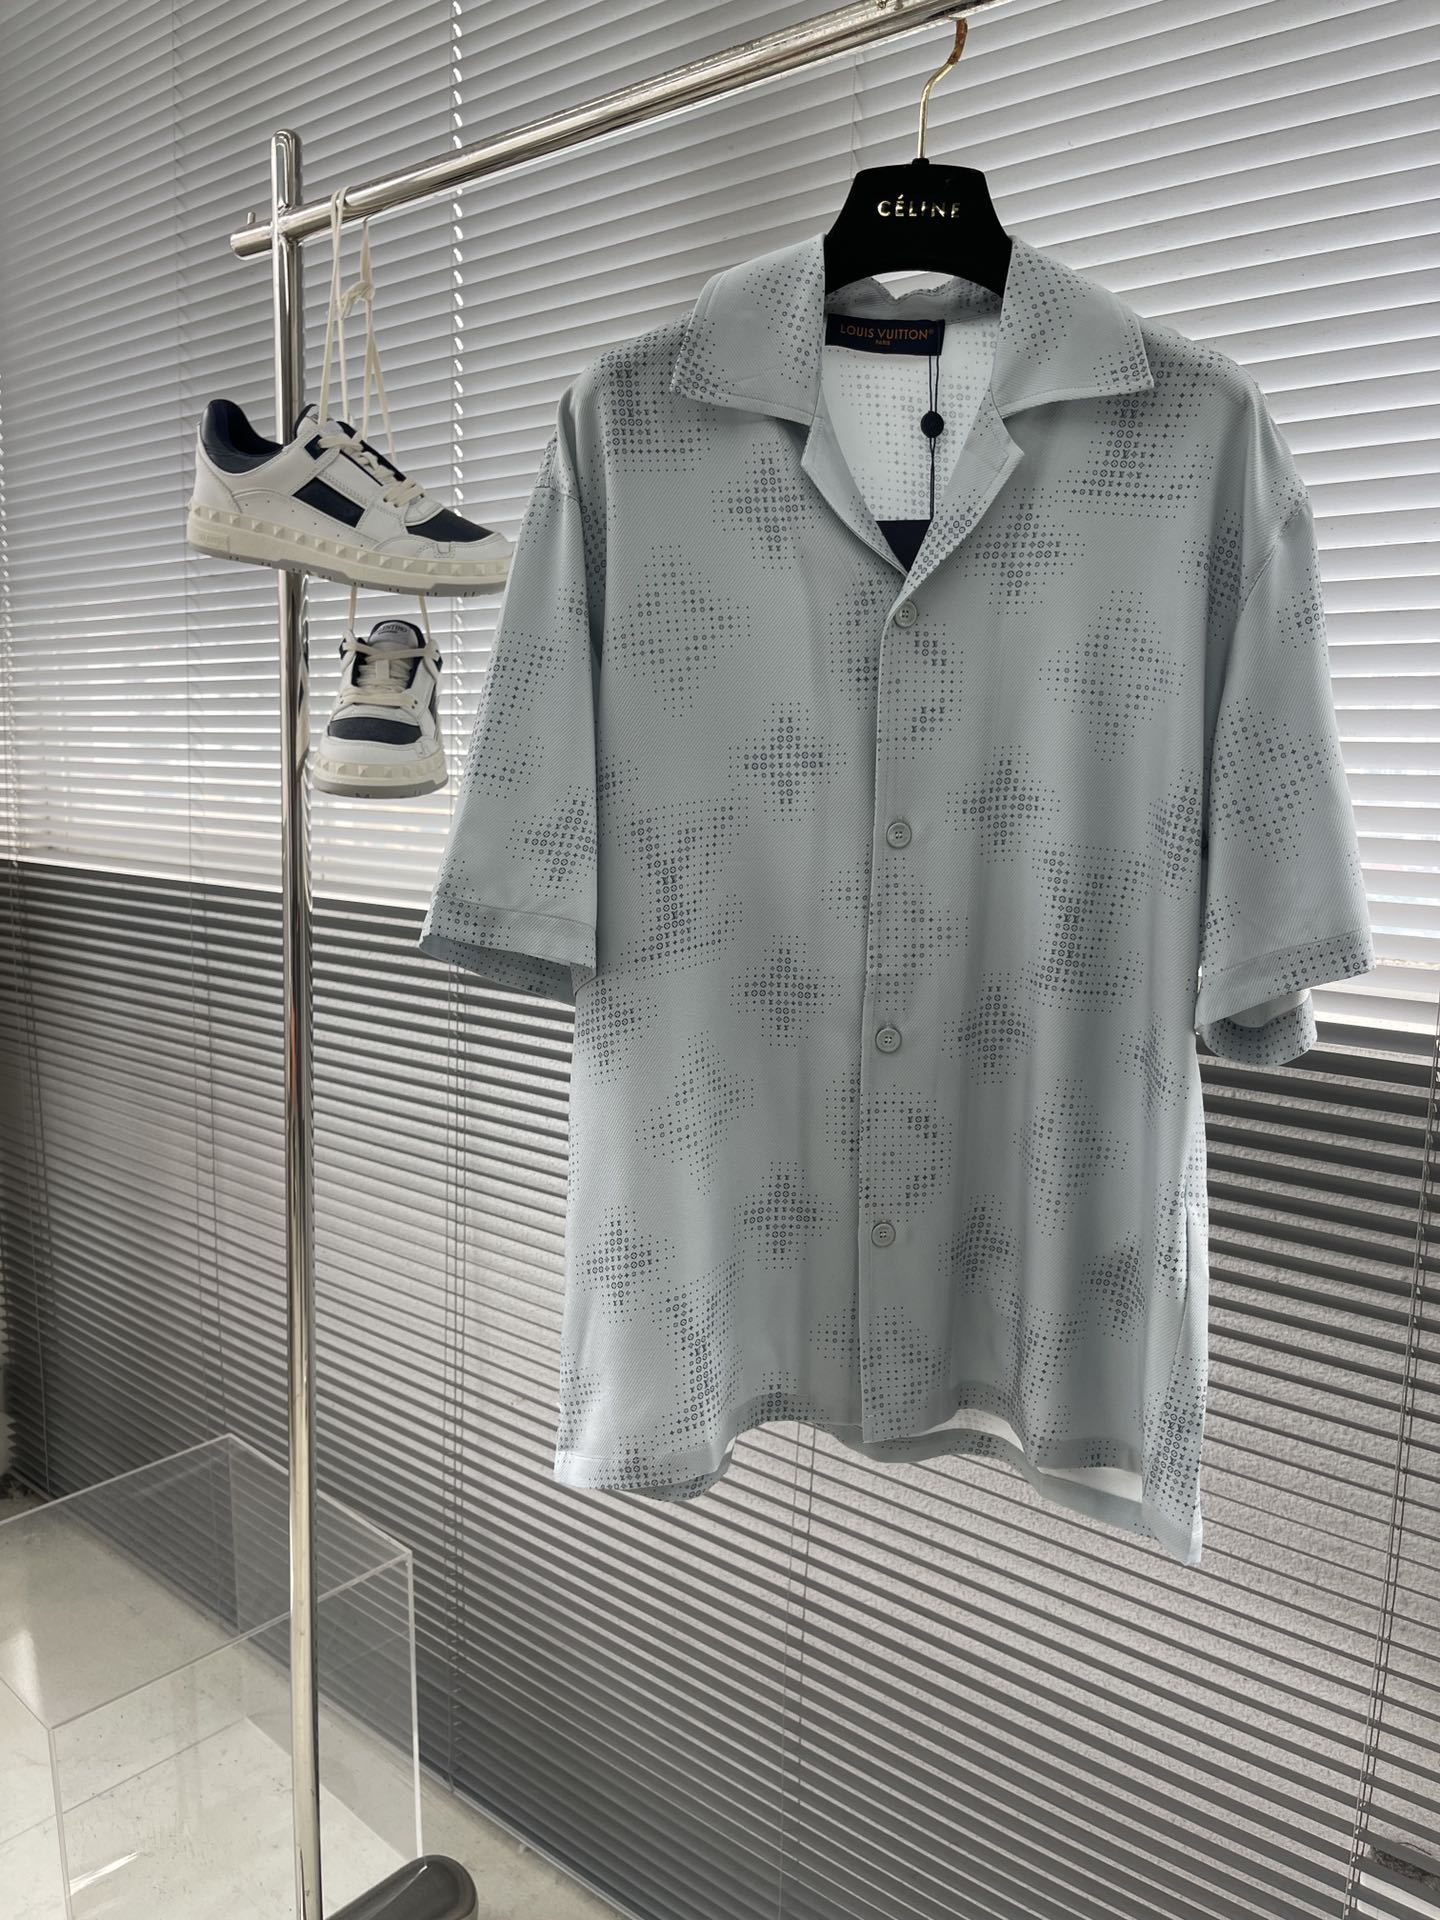 لويس فيتون النسخ المتماثلة
 ملابس قمصان & البلوزات السراويل القصيرة العام للرجال والنساء الربيع والصيف سلسلة موضة